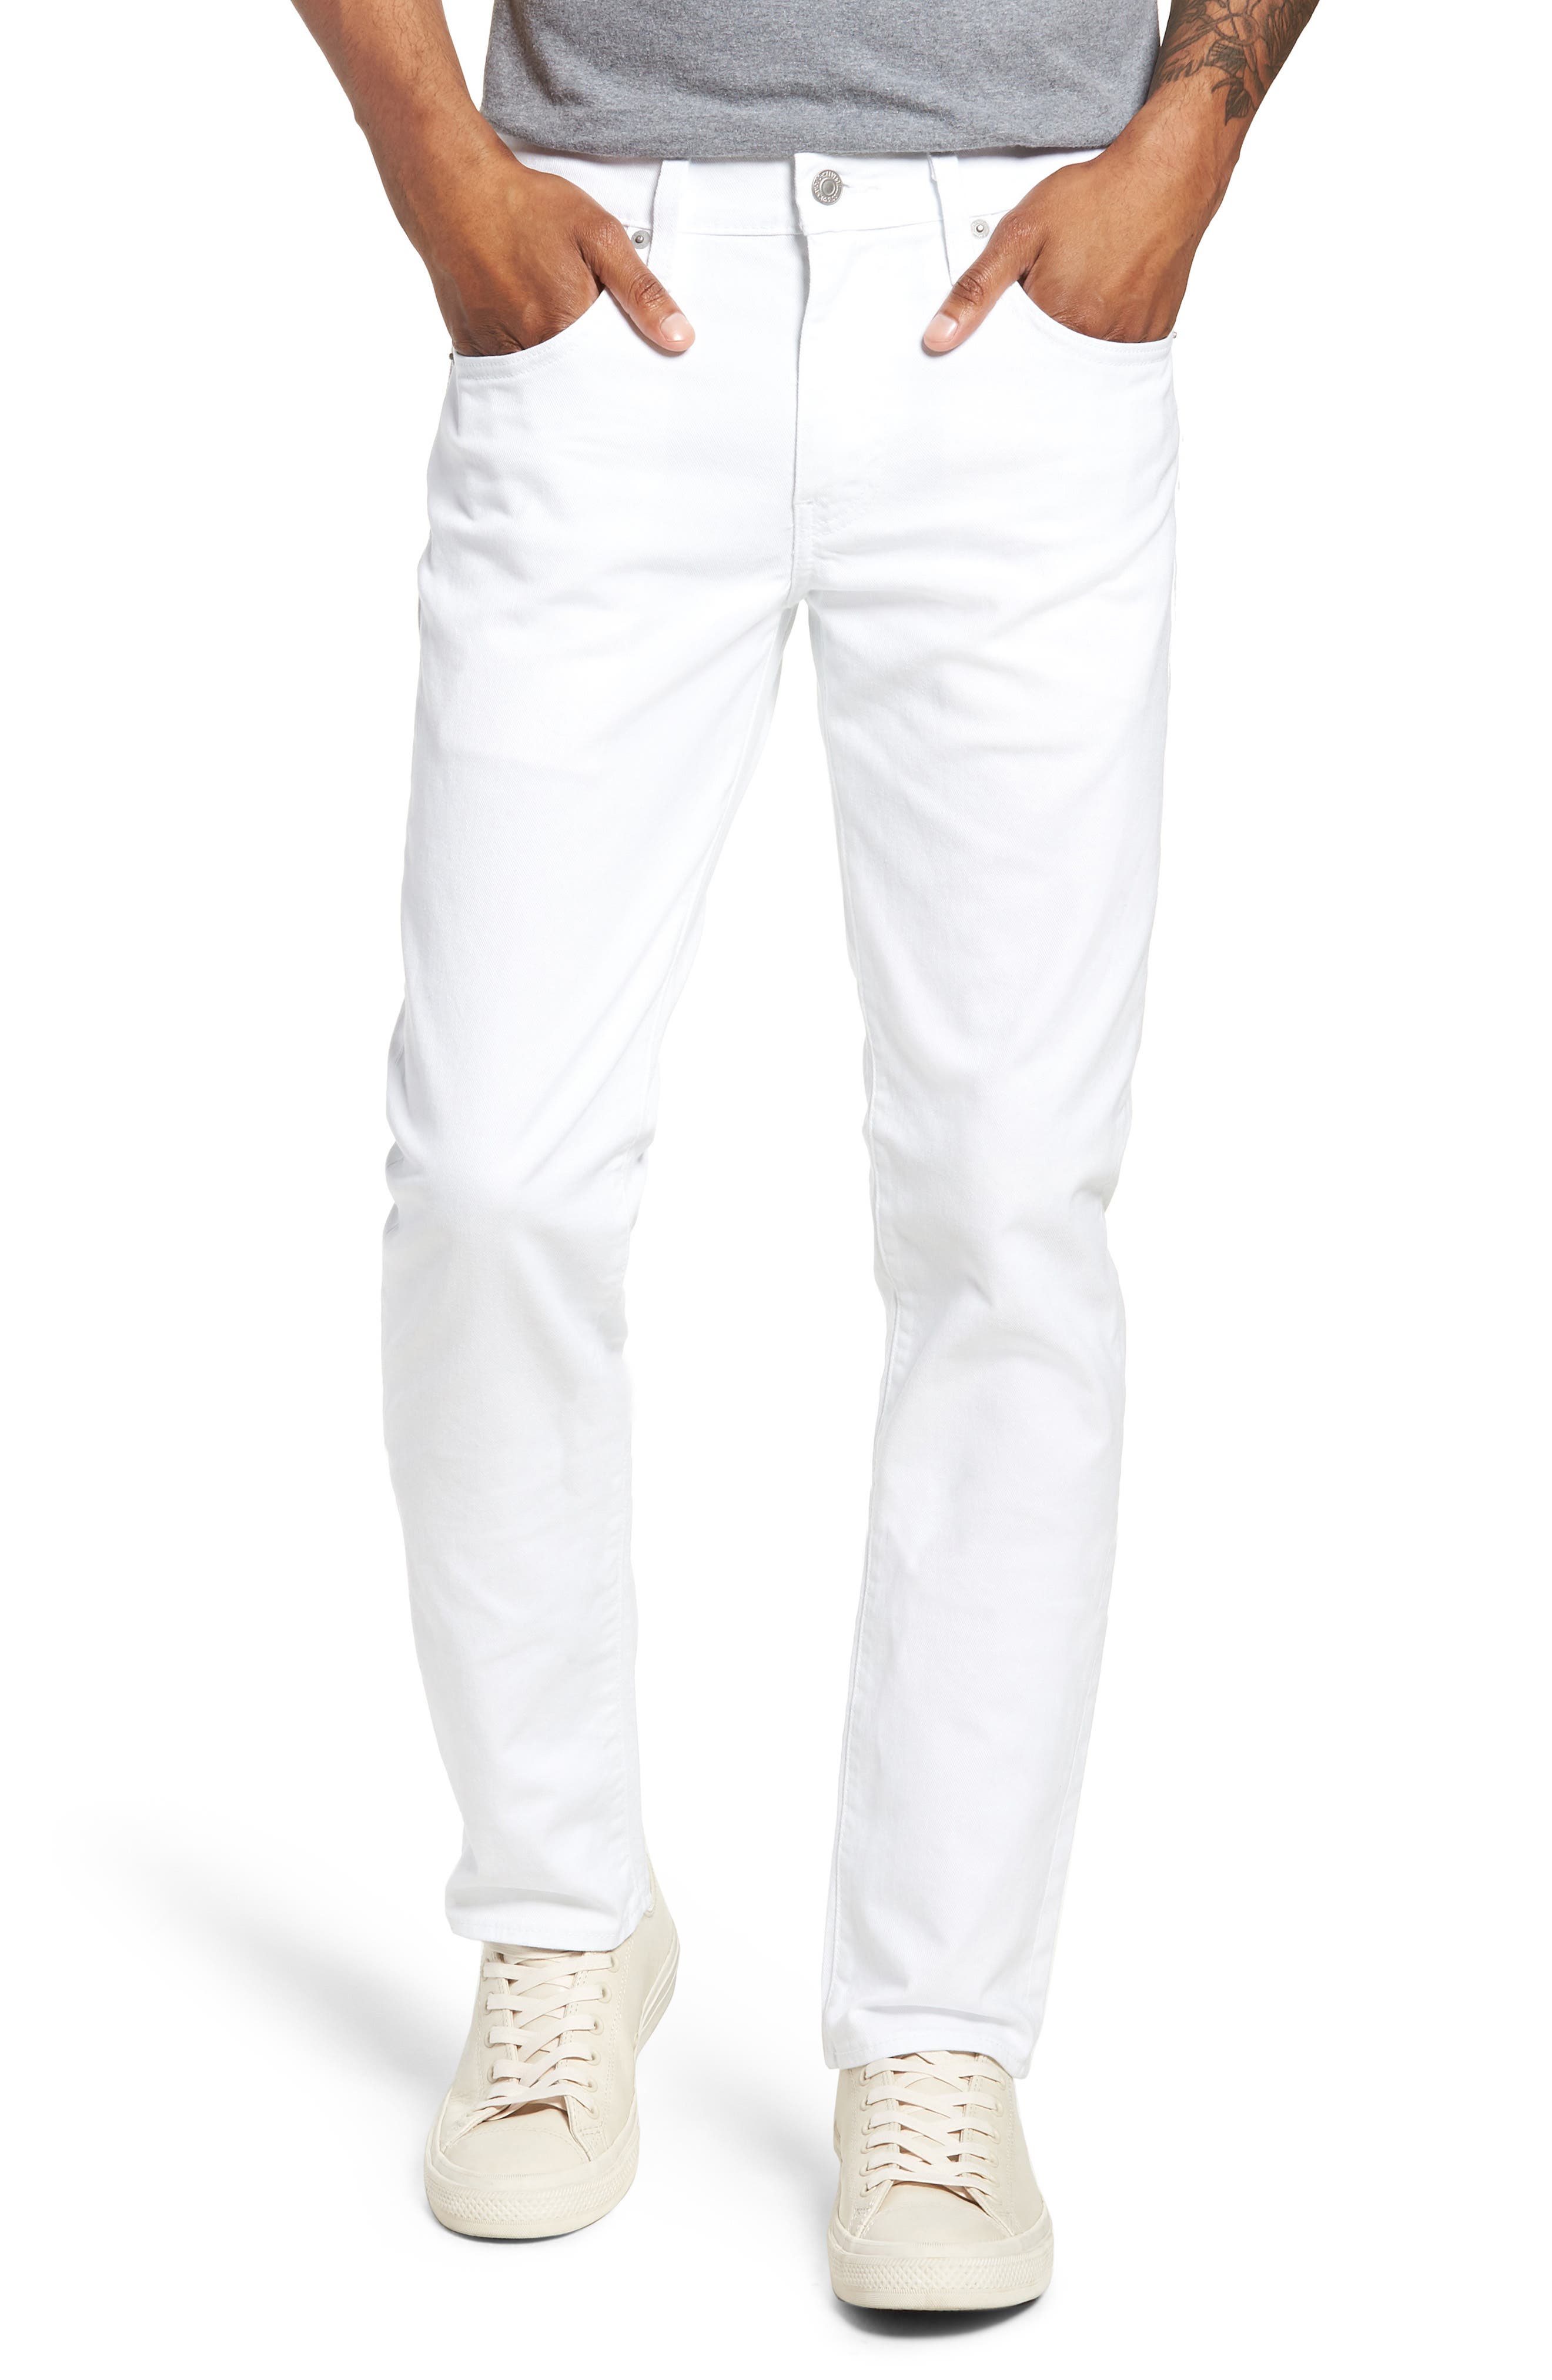 levis 511 white jeans